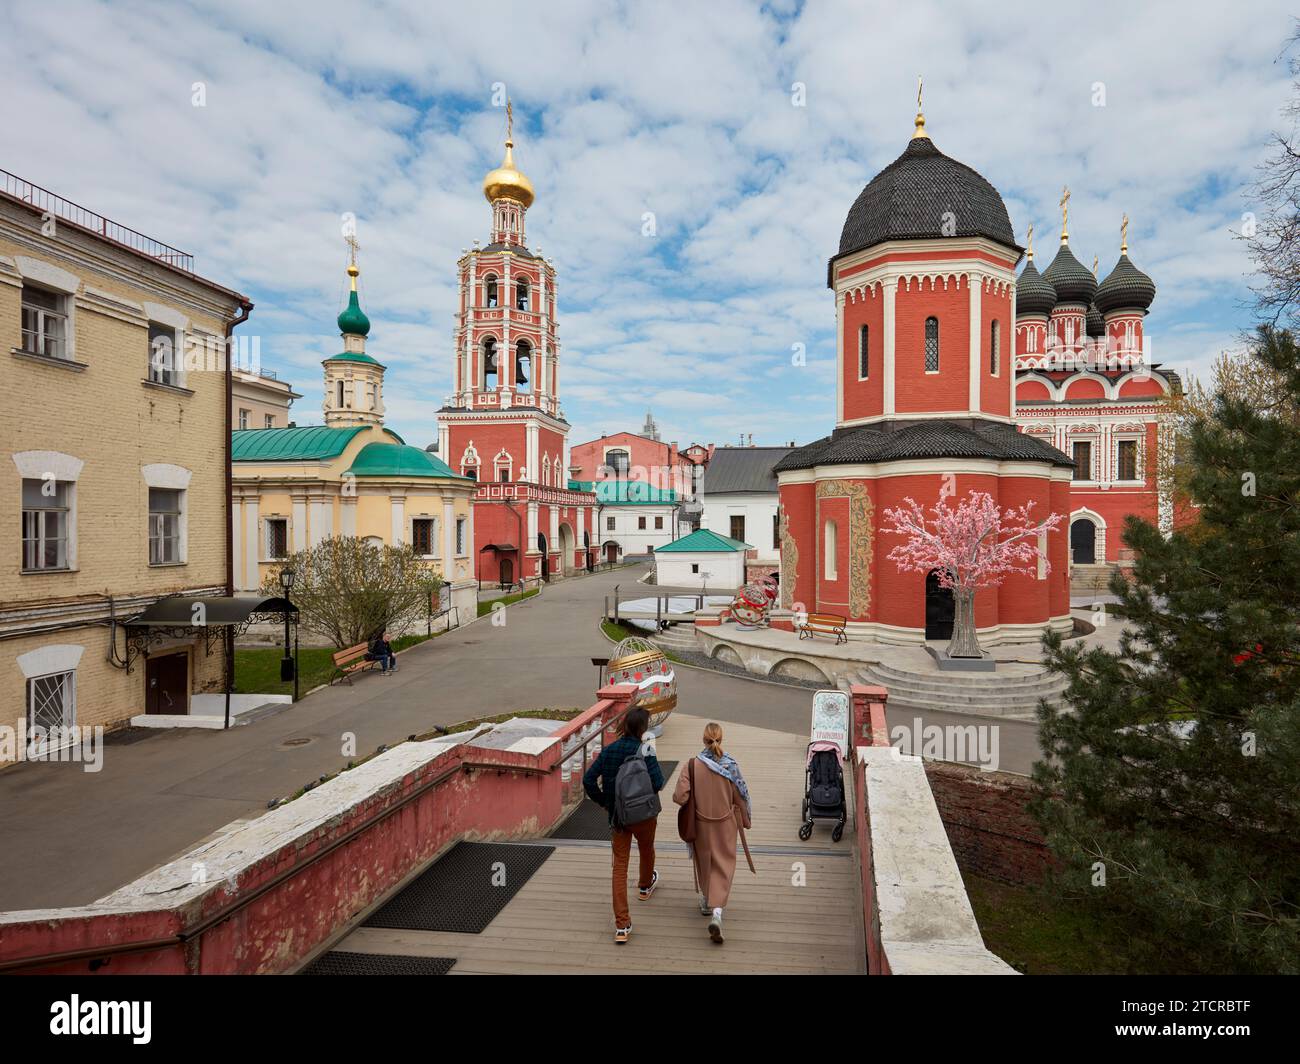 Territoire du monastère de Vysokopetrovsky (monastère supérieur de Saint-Pierre). Moscou, Russie. Banque D'Images